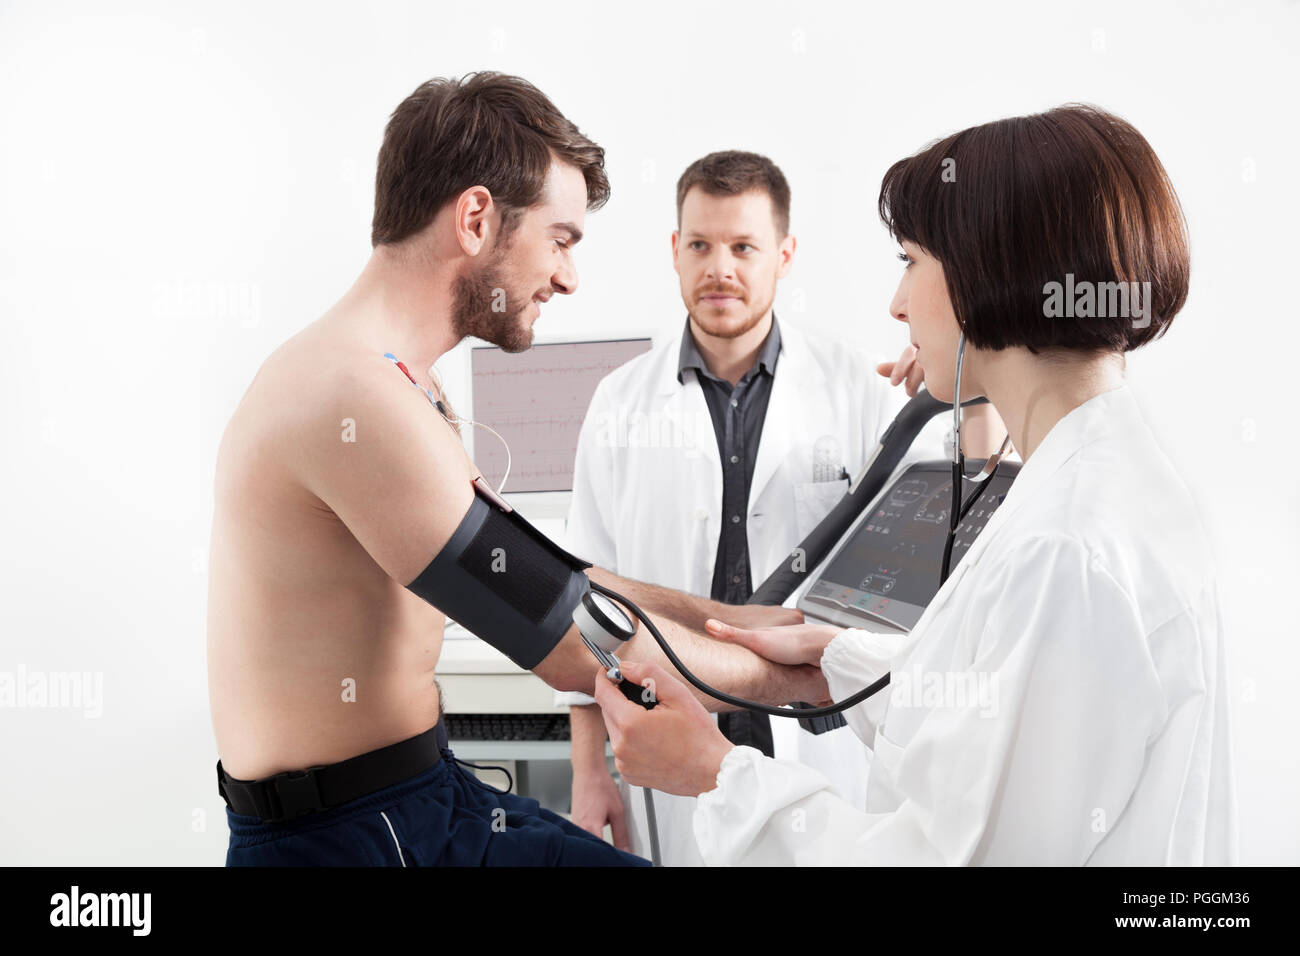 Ein männlicher Patient, radeln auf einem Fahrradergometer Stress Test system für die Funktion des Herzens überprüft Stockfoto